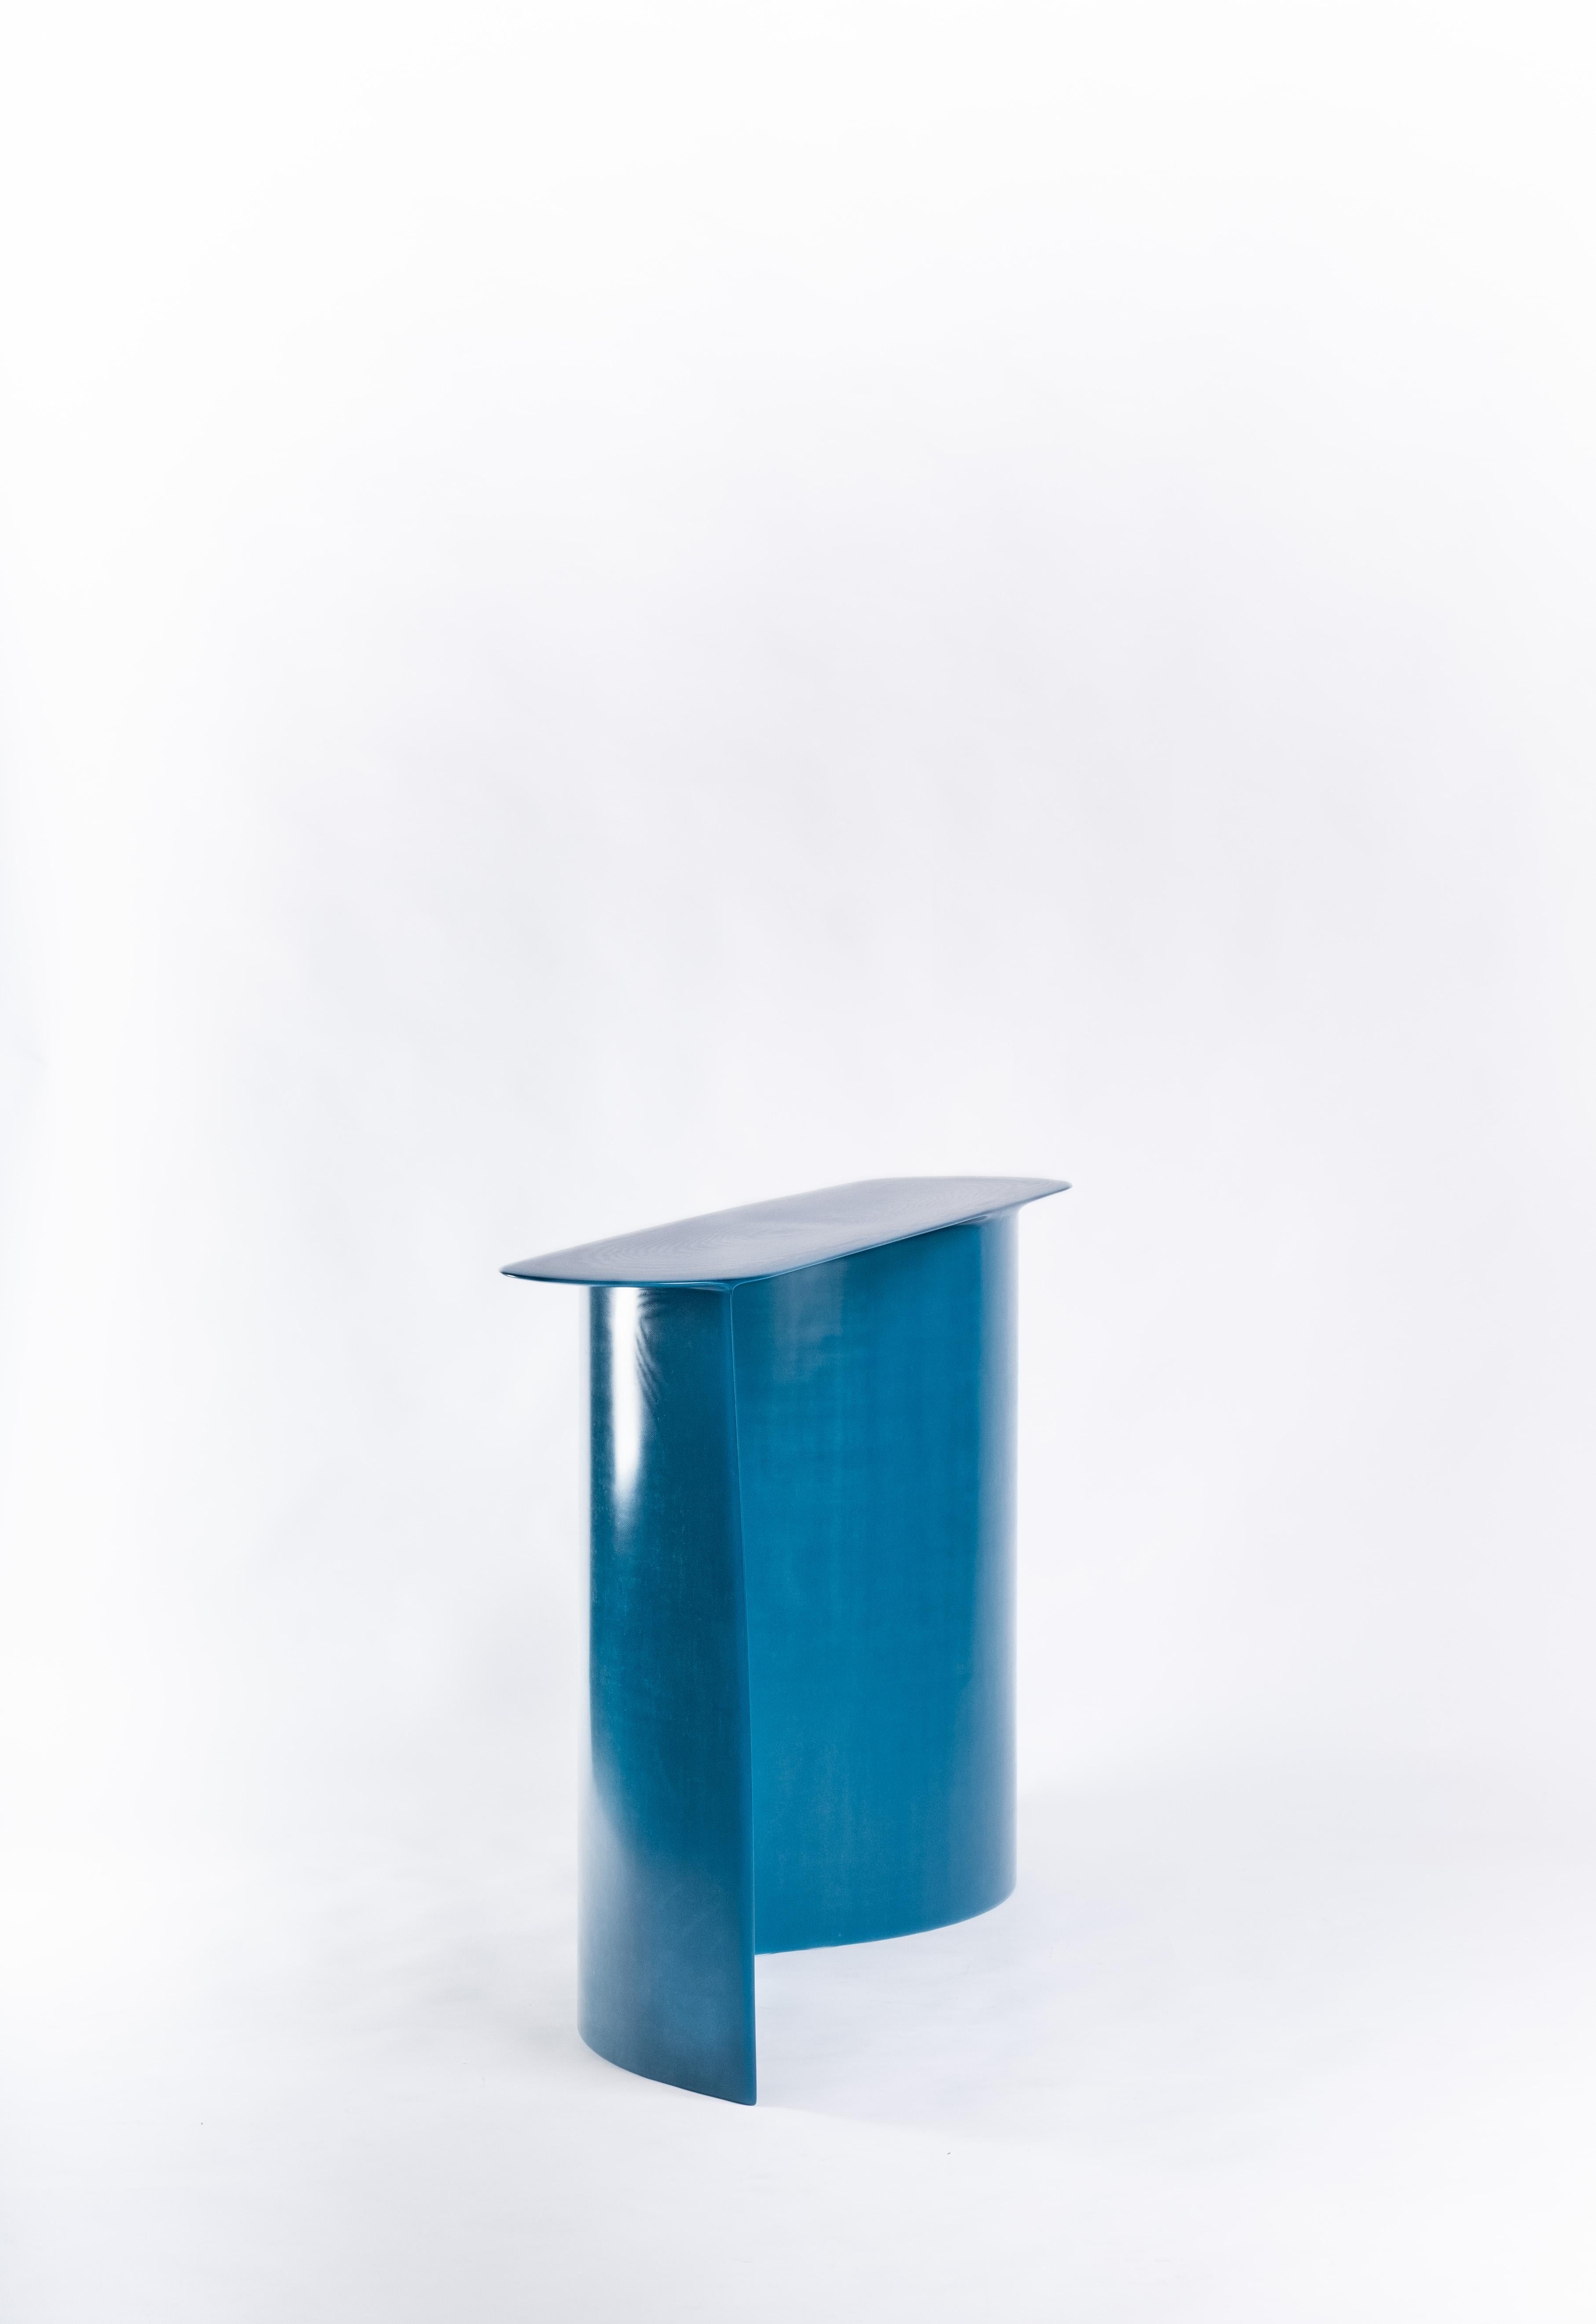 Néerlandais Console contemporaine en fibre de verre bleue, Nouvelle vague, de Lukas Cober